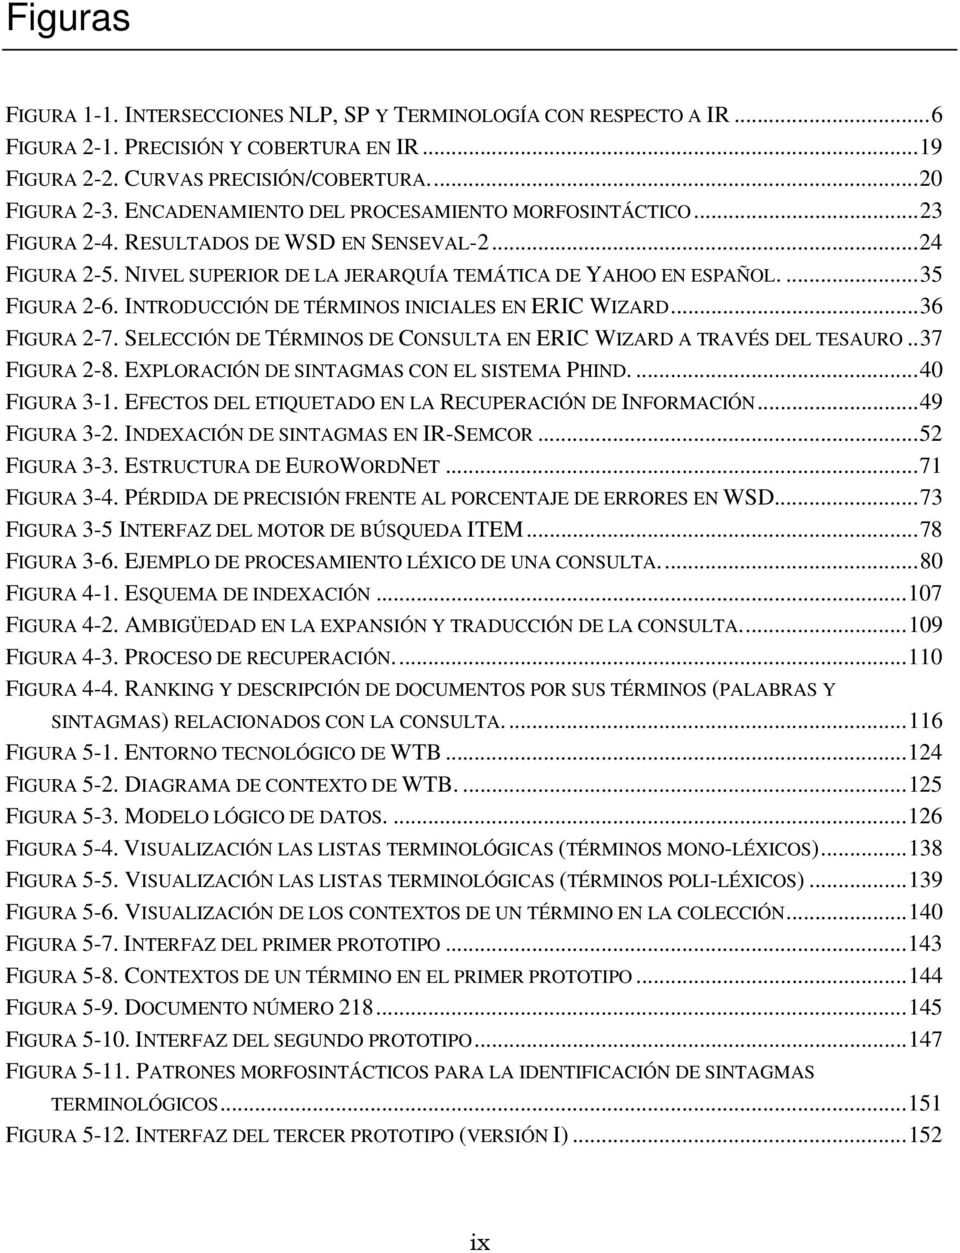 INTRODUCCIÓN DE TÉRMINOS INICIALES EN ERIC WIZARD...36 FIGURA 2-7. SELECCIÓN DE TÉRMINOS DE CONSULTA EN ERIC WIZARD A TRAVÉS DEL TESAURO..37 FIGURA 2-8. EXPLORACIÓN DE SINTAGMAS CON EL SISTEMA PHIND.